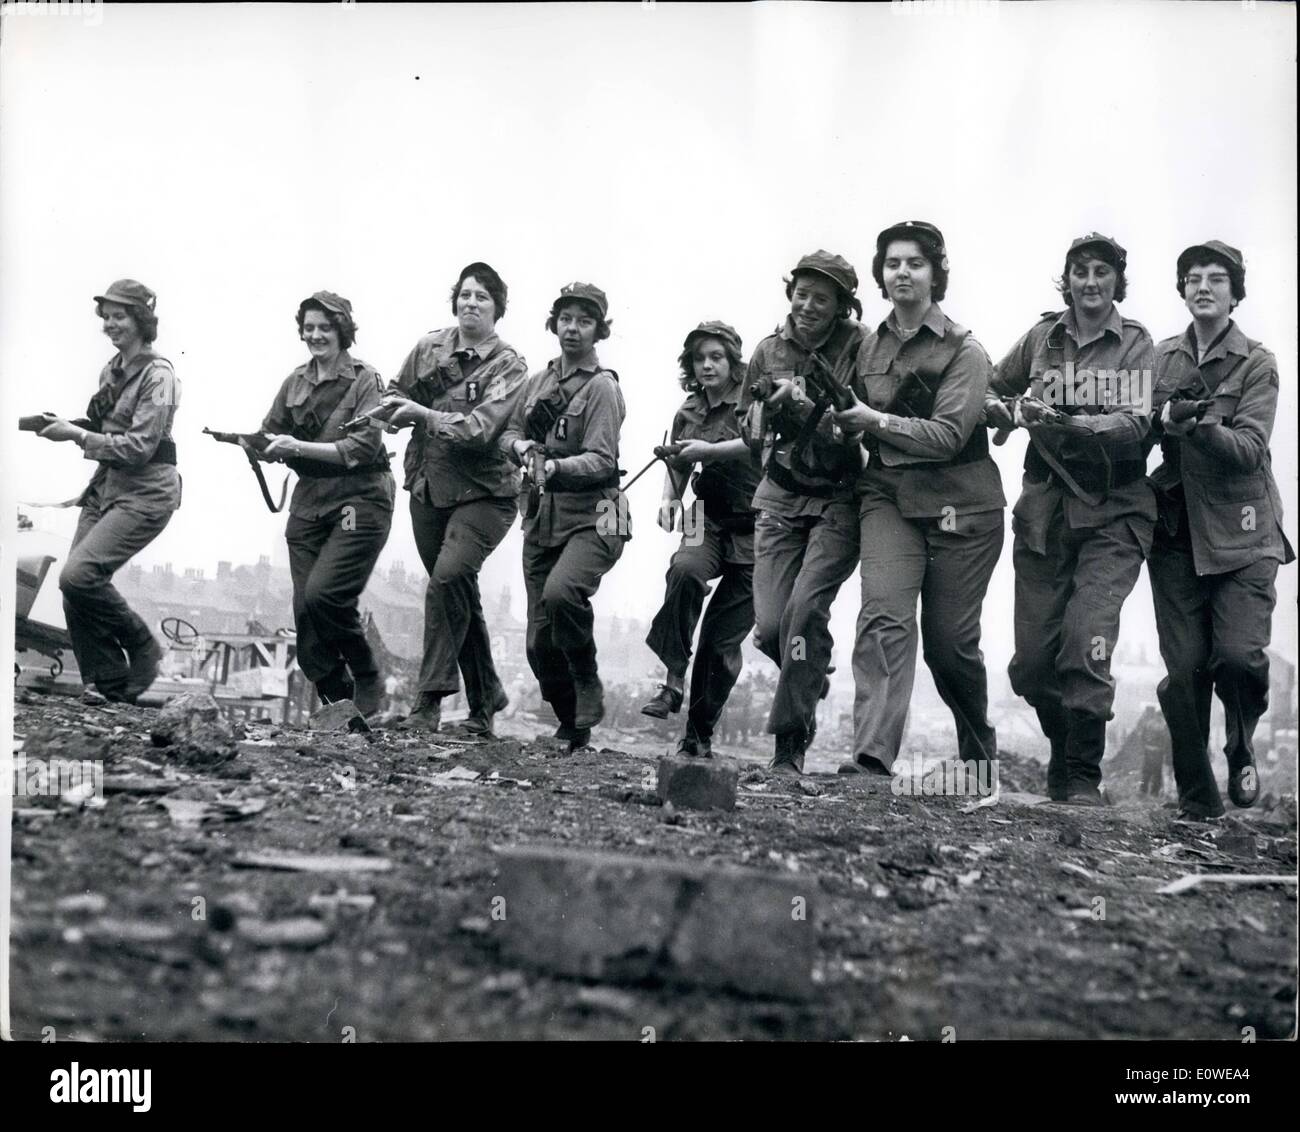 10 octobre 1962 - ''Amazon Army'' sur un plateau de tournage : neuf grandes  filles - hauteur moyenne 5ft. Ins 11 - est passé à l'action avec des fusils  et mitrailleuses sur